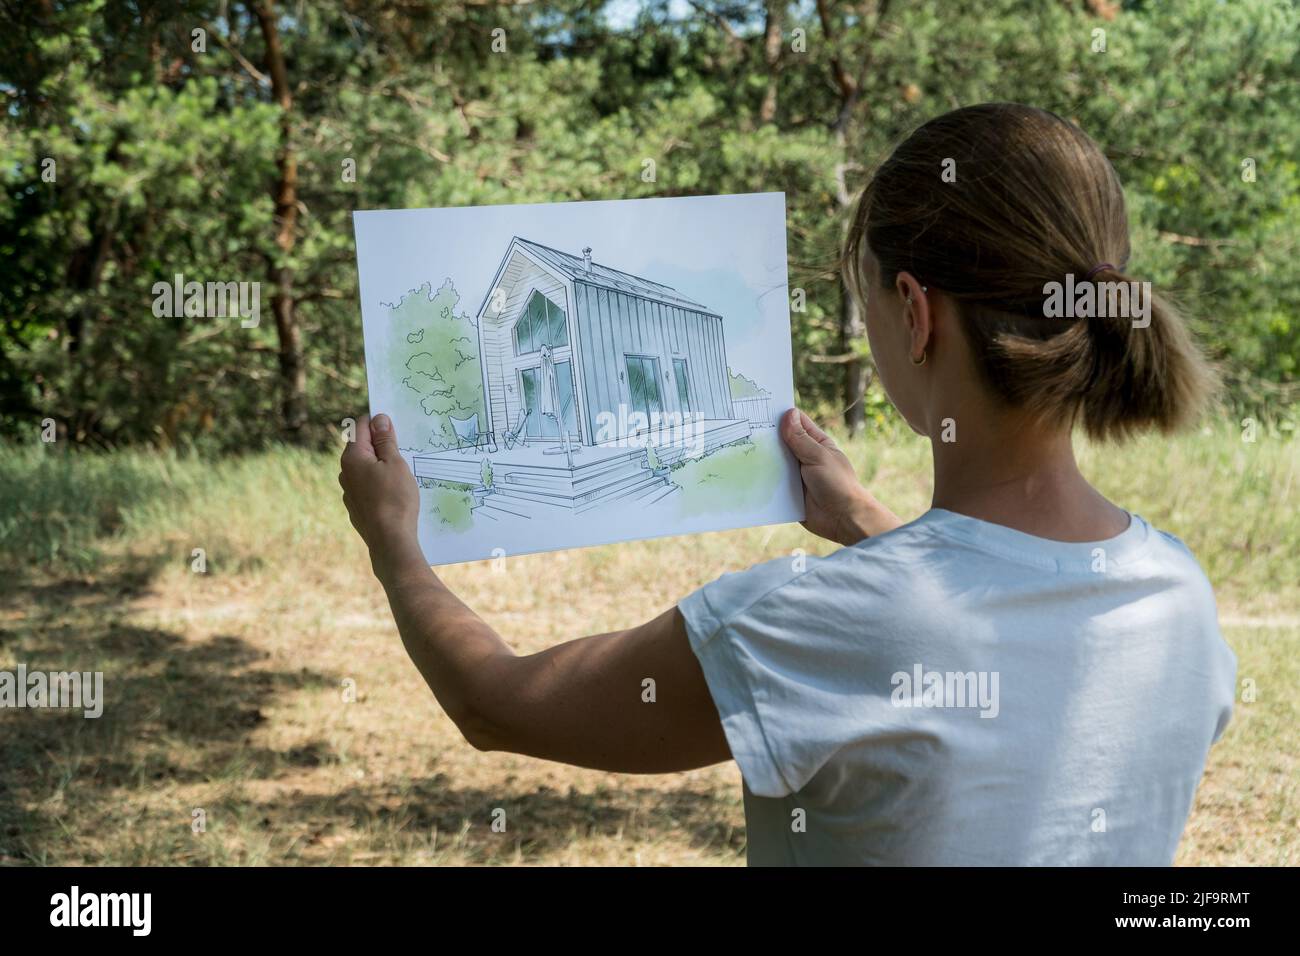 Architecte tenant la maison de grange dessiné à la main esquisse devant un terrain. Concept architectural Banque D'Images